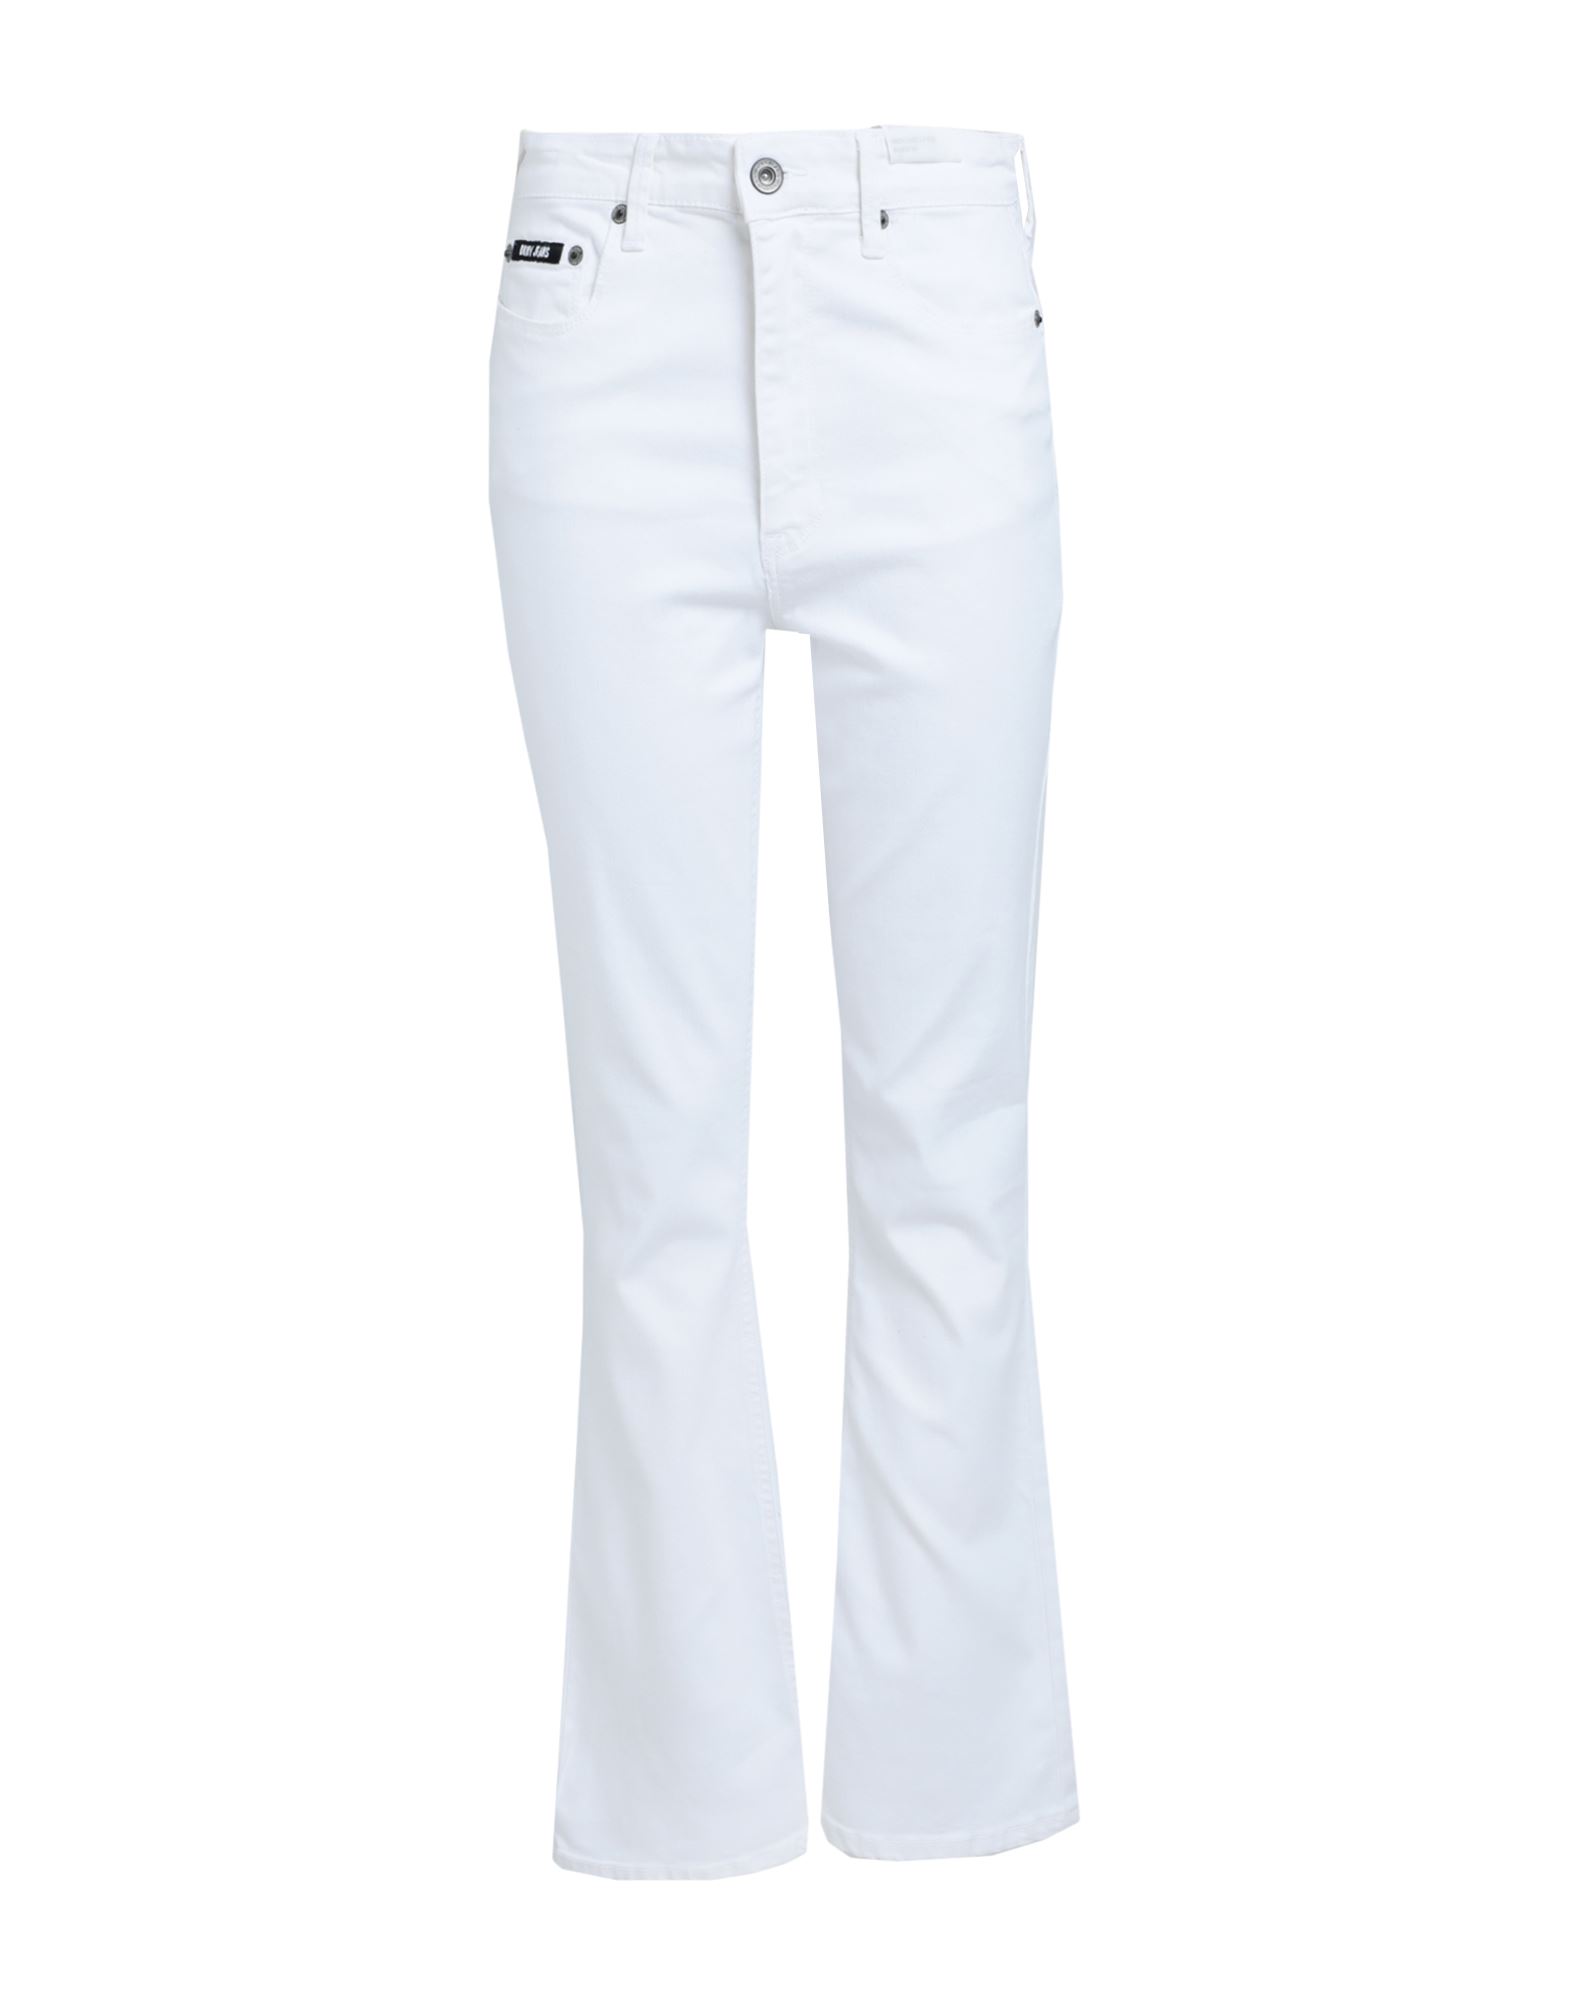 DKNY Jeanshose Damen Weiß von DKNY